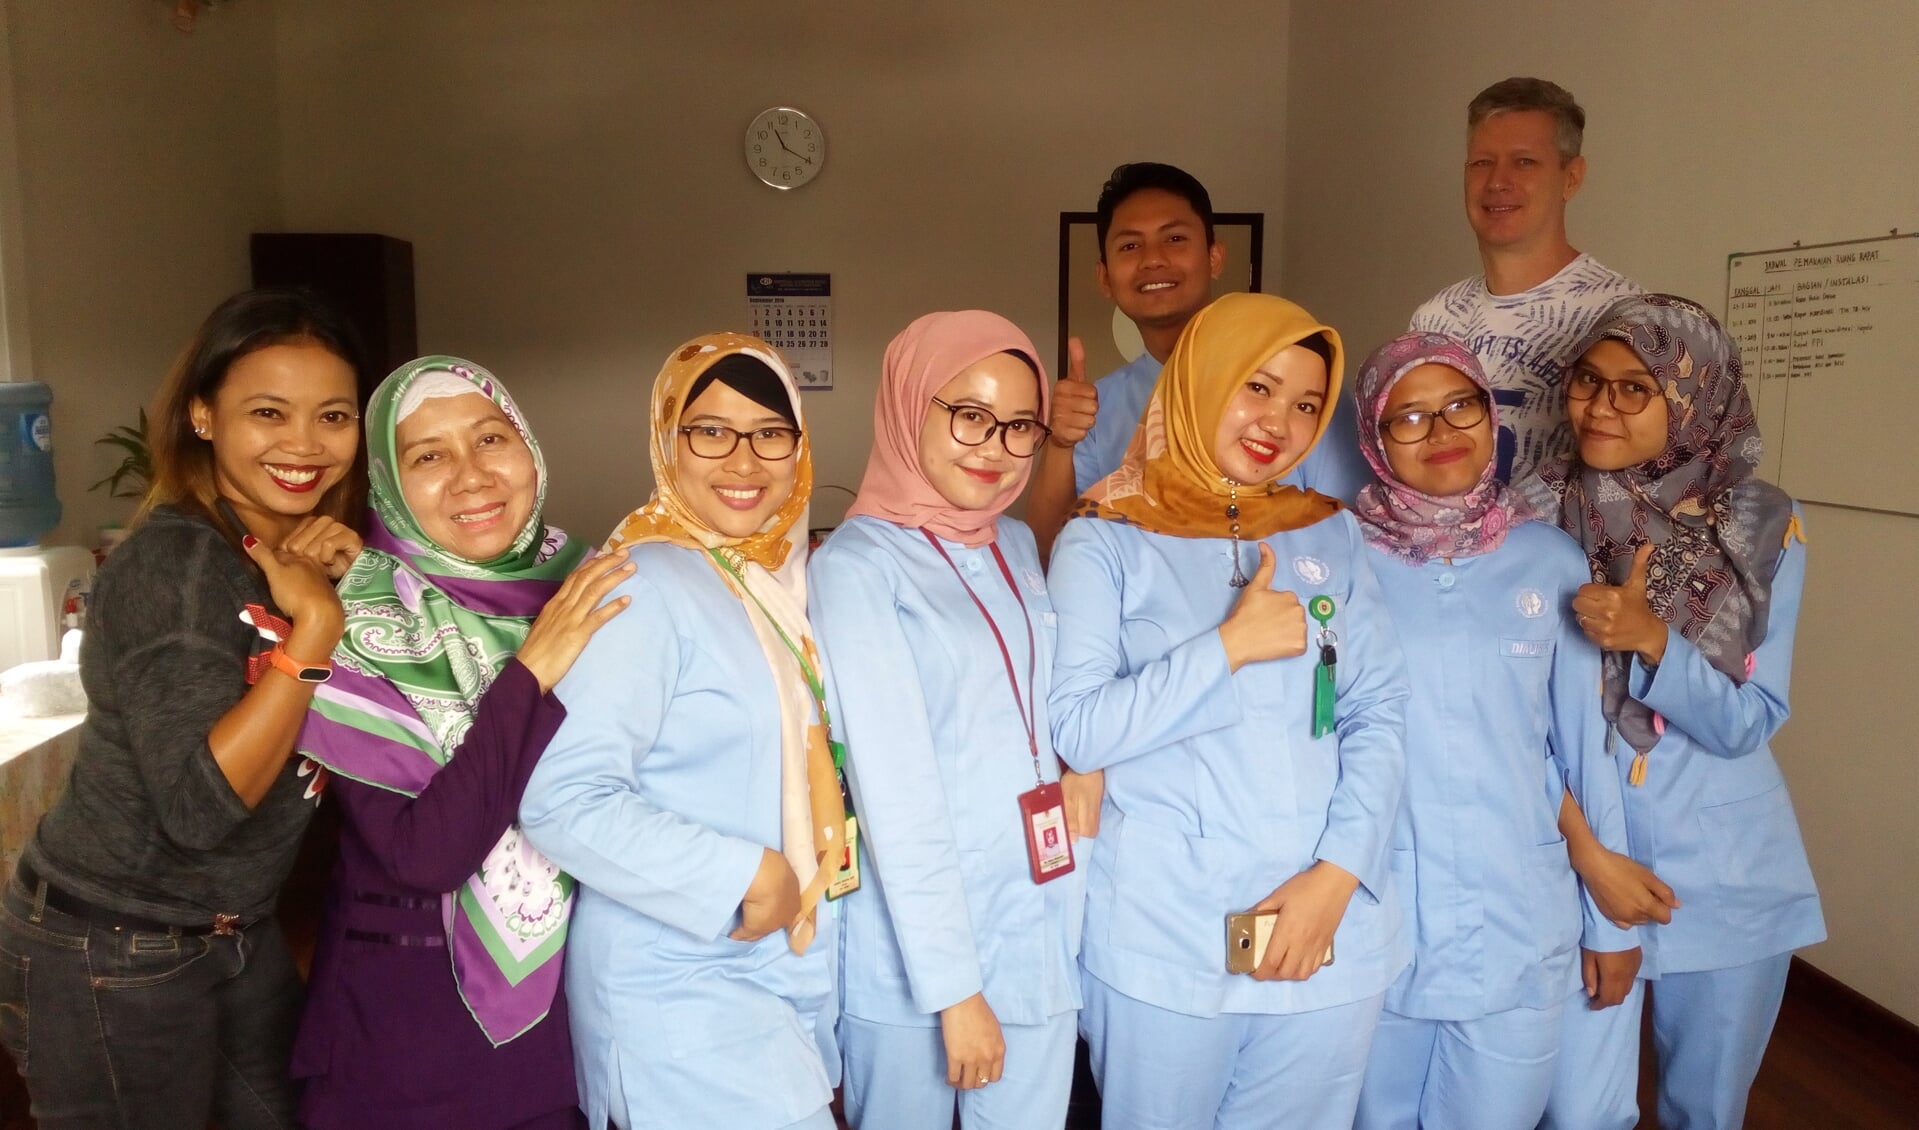 De zes verpleegkundigen (in de blauwe uniformen) die deel zullen nemen aan de bachelorsopleiding verpleegkunde.